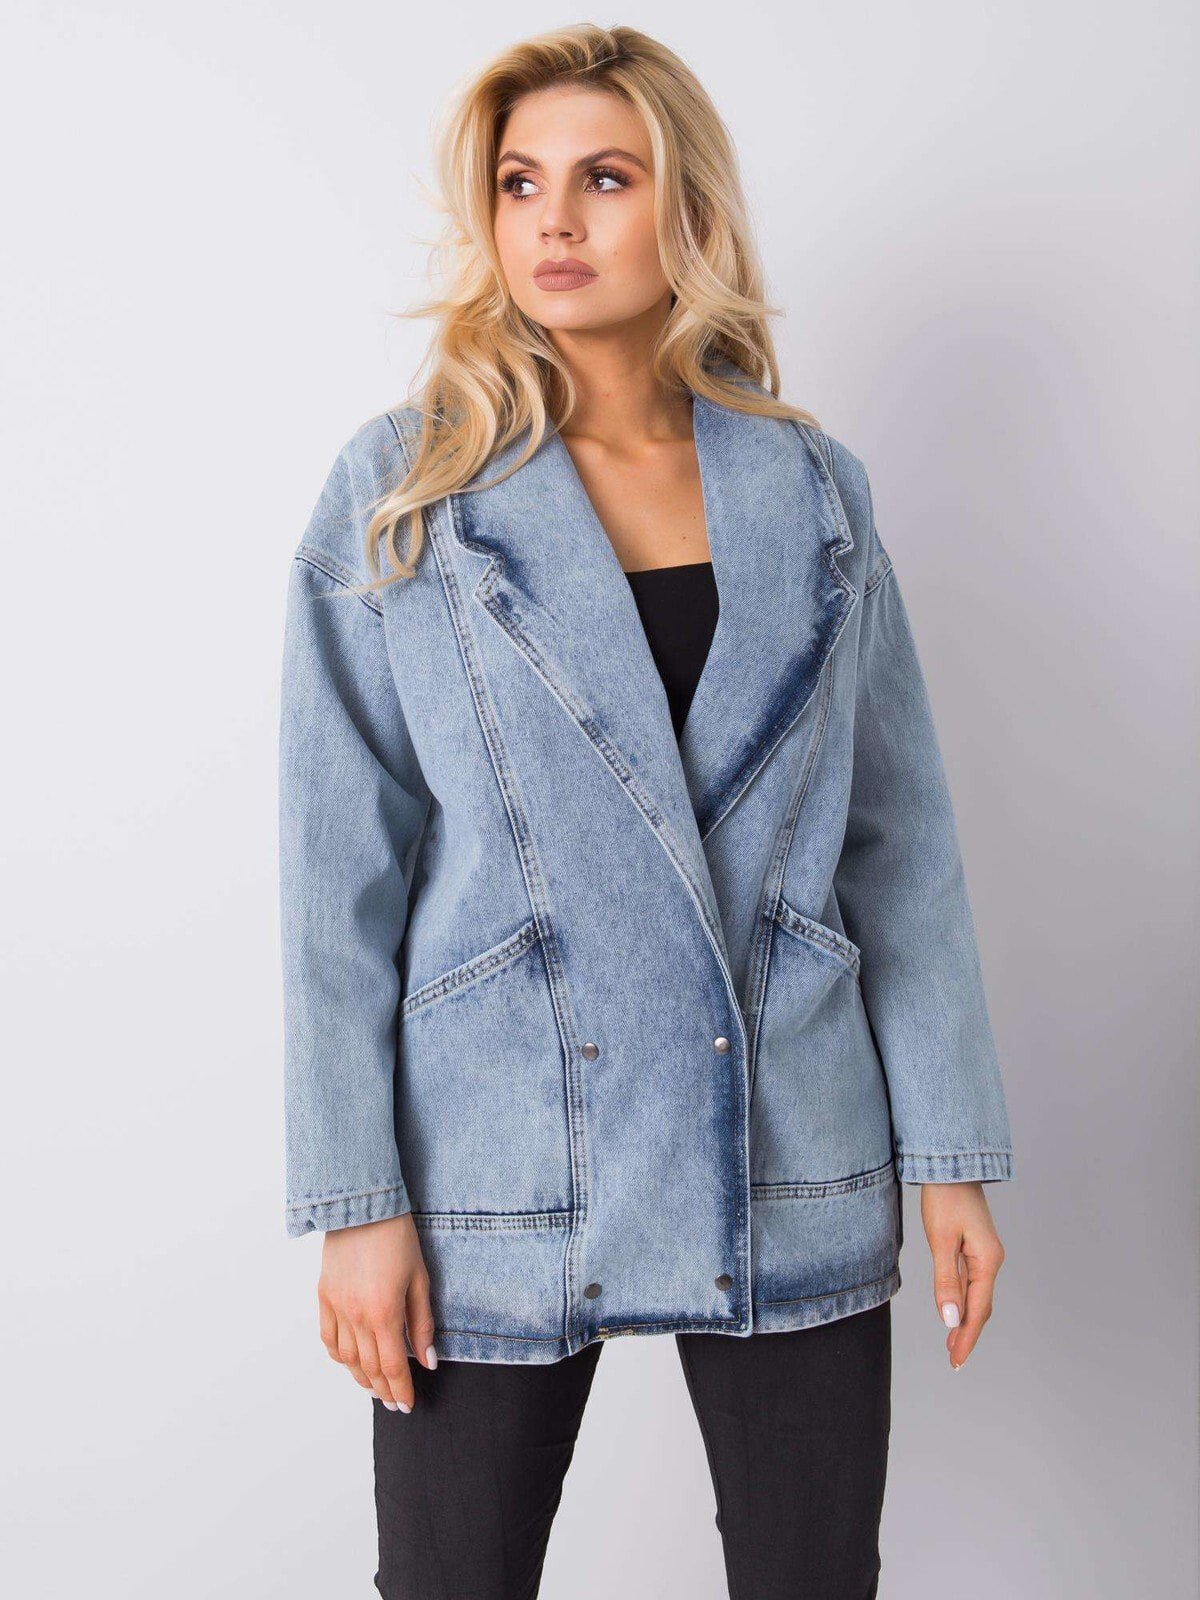 Женская удлиненная голубая джинсовая куртка Factory Price